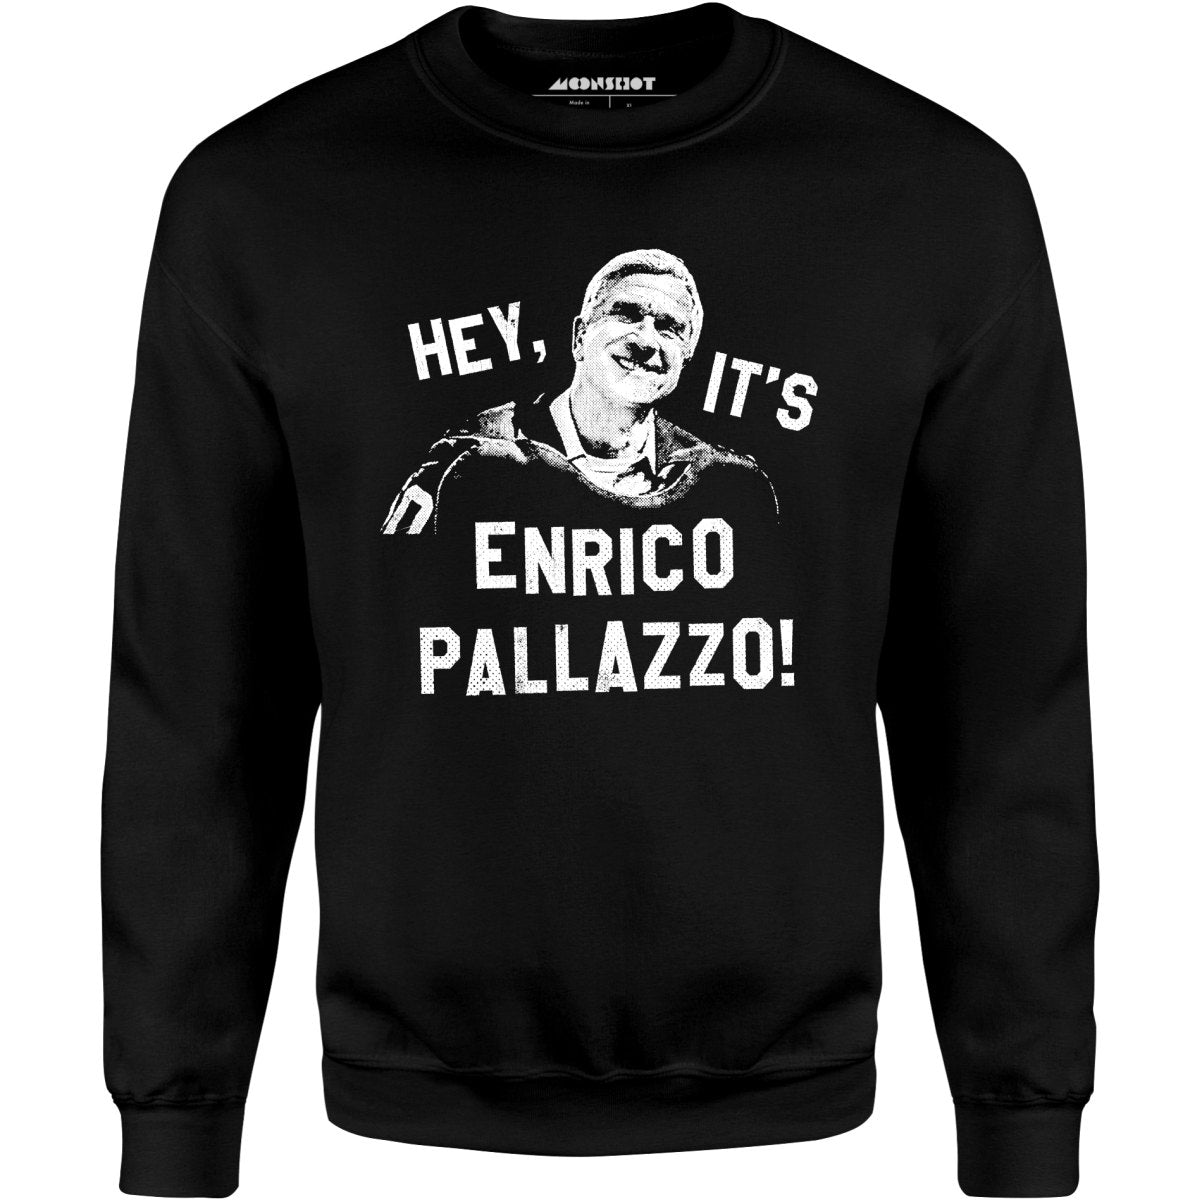 Hey, It's Enrico Pallazzo! - Unisex Sweatshirt